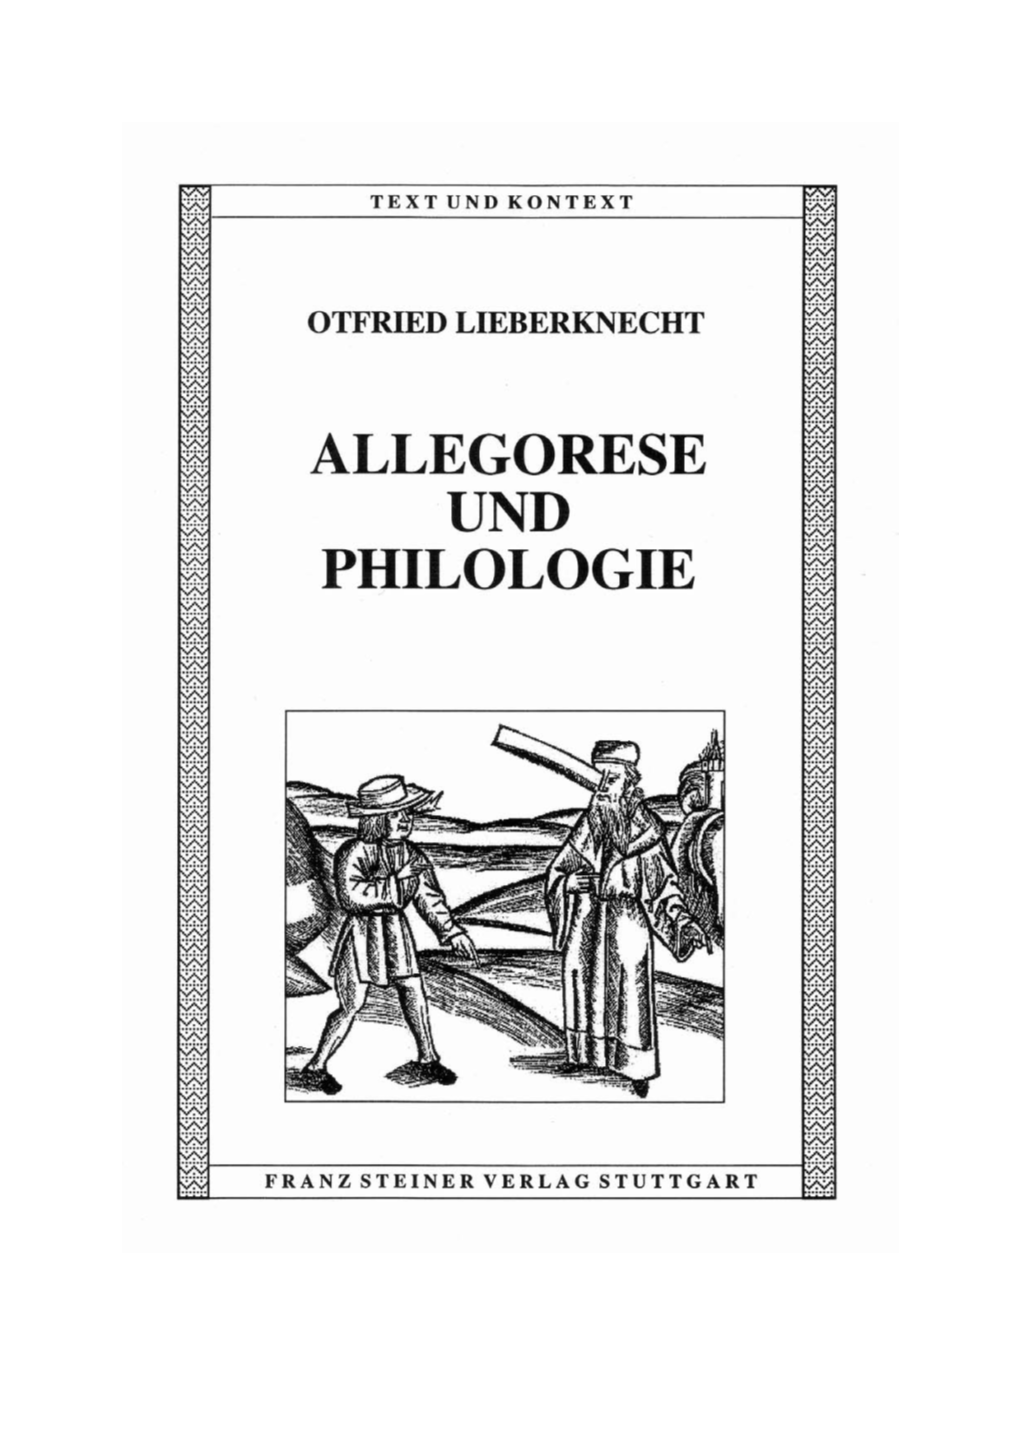 Allegorese Und Philologie : Überlegungen Zum Problem Des Mehrfachen Schriftsinns in Dantes „Commedia“ / Otfried Lieberknecht